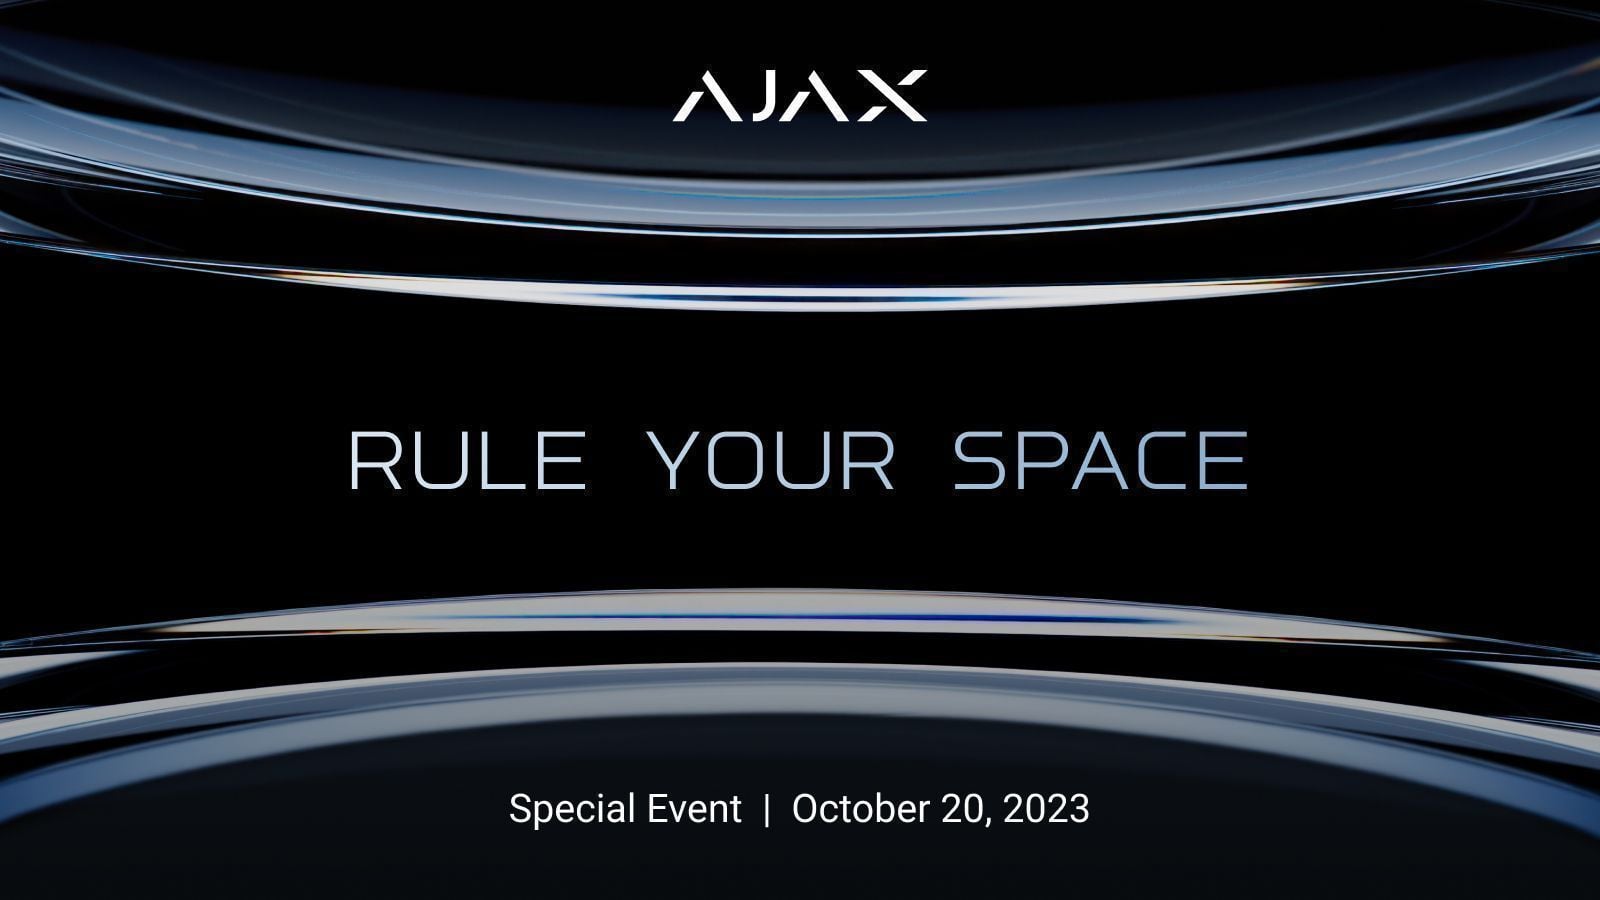 ¡Prepárense para conocer las últimas novedades de la industria de la seguridad! El Ajax Special Event: Domina tu espacio se celebrará el 20 de octubre